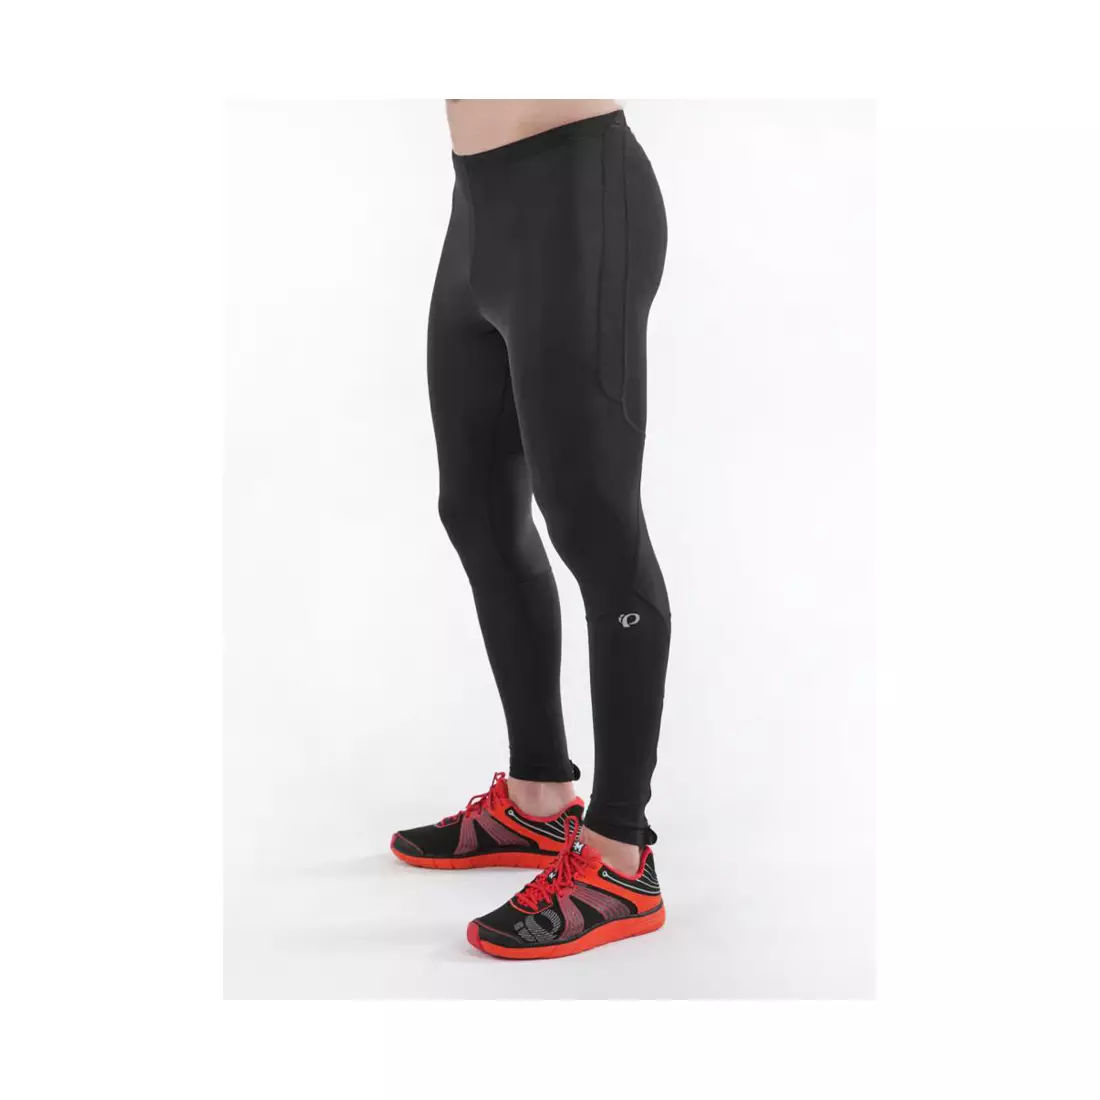 PEARL IZUMI Fly Thermal Tight 12111408-021 - pantaloni izolați pentru alergare pentru bărbați